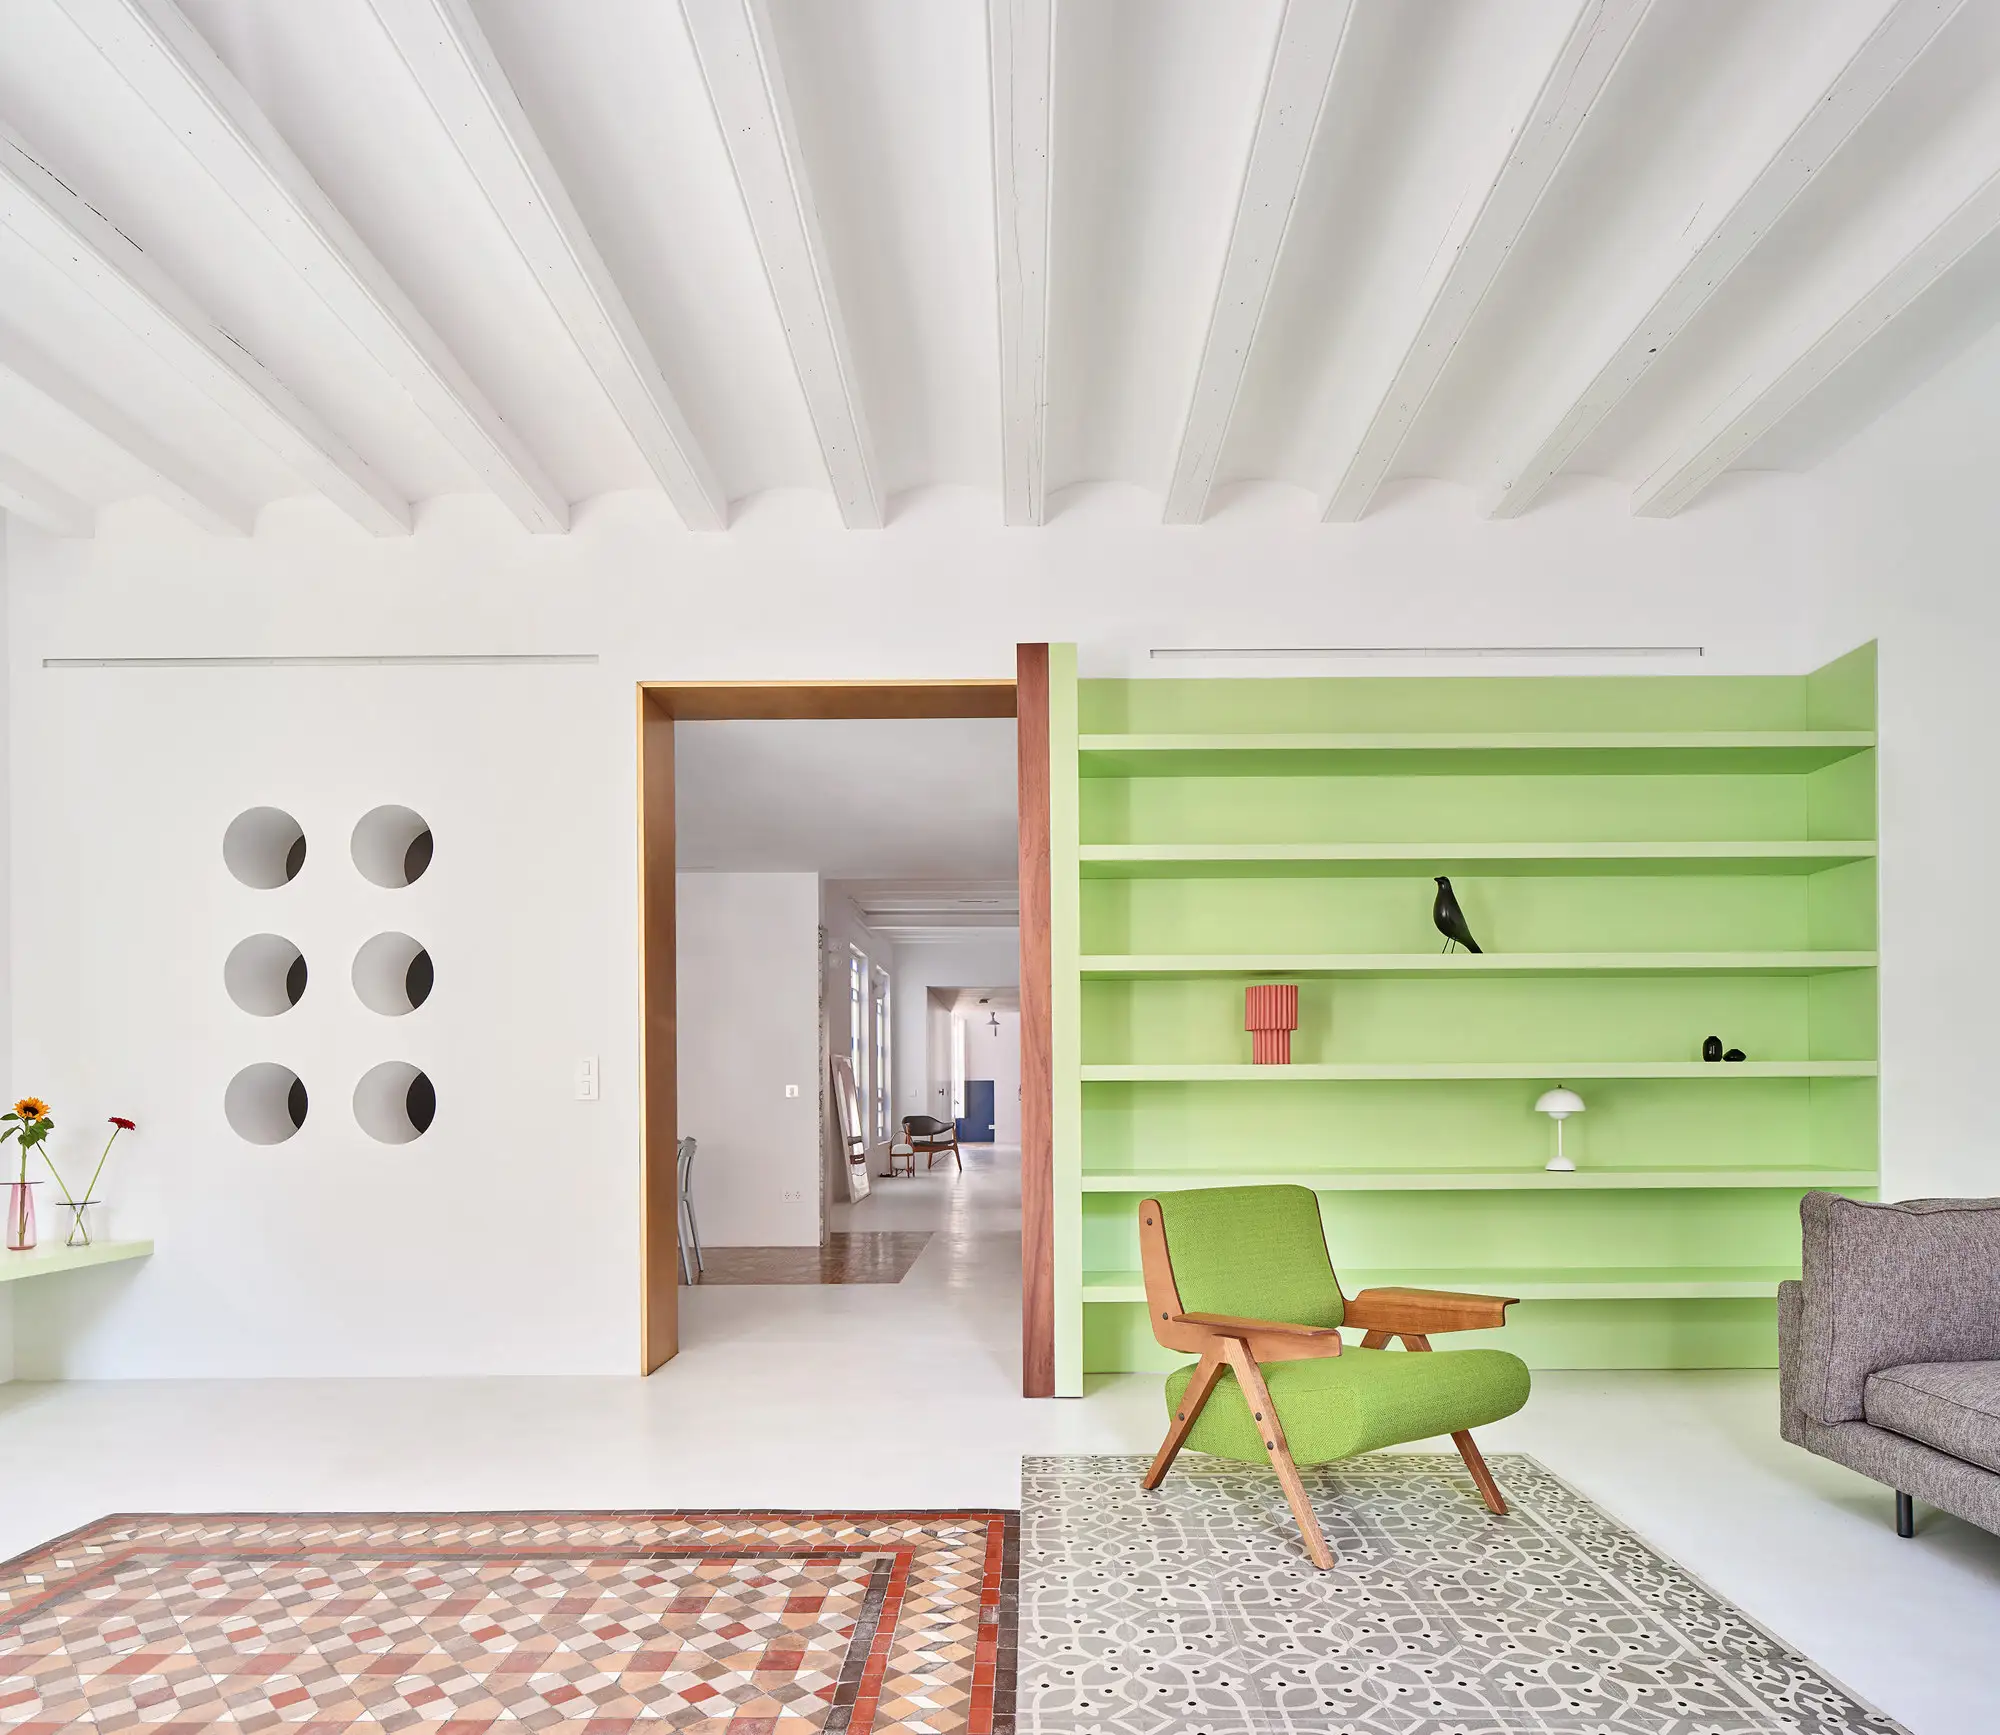 estanteria verde menta, alfombras y pared con ventanas redondas